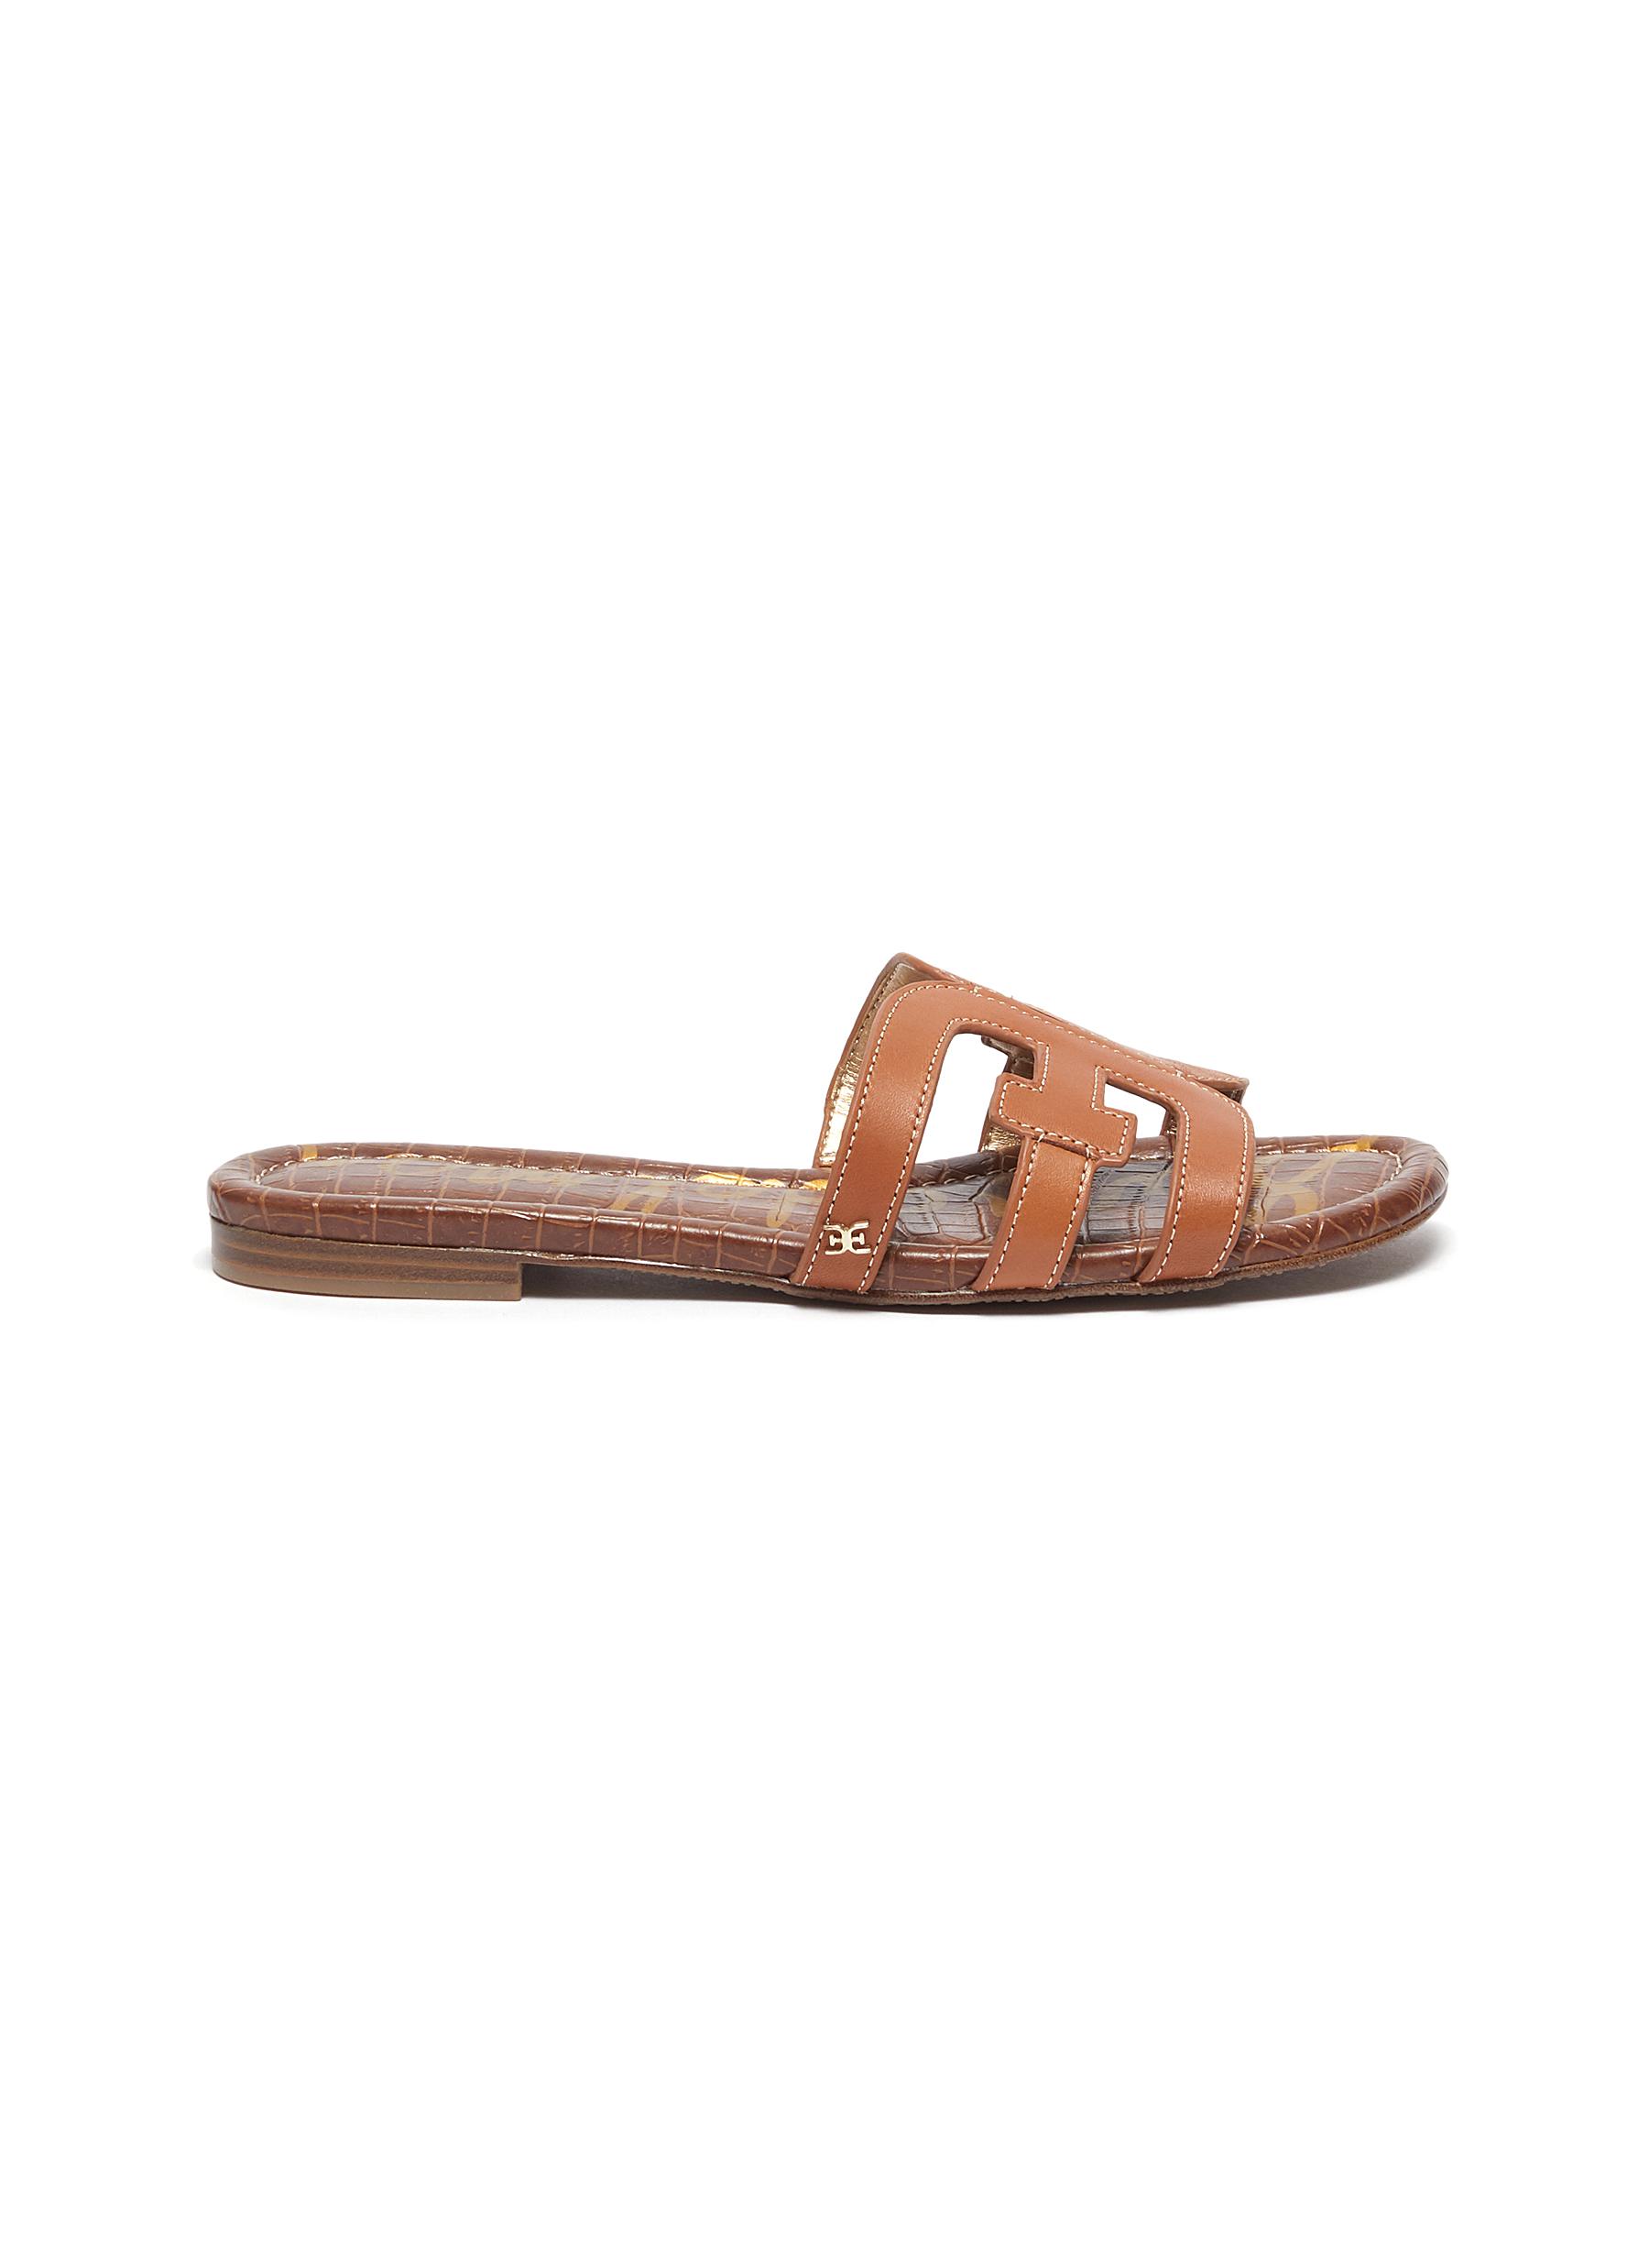 Bay' leather slide sandals